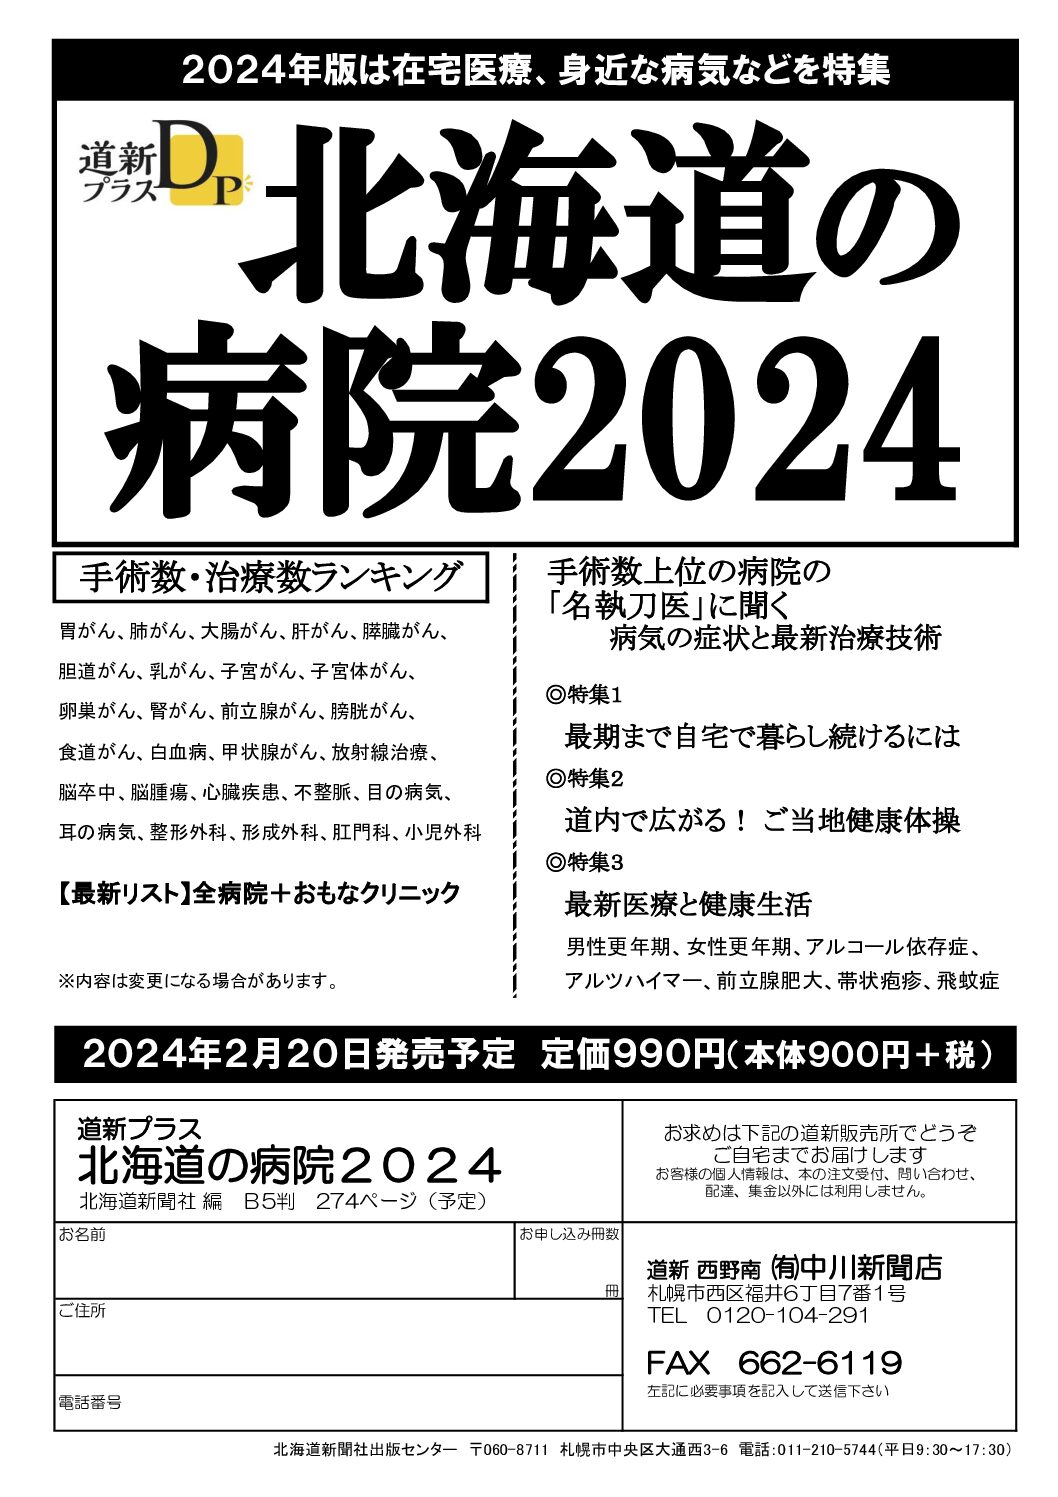 北海道の病院2024image